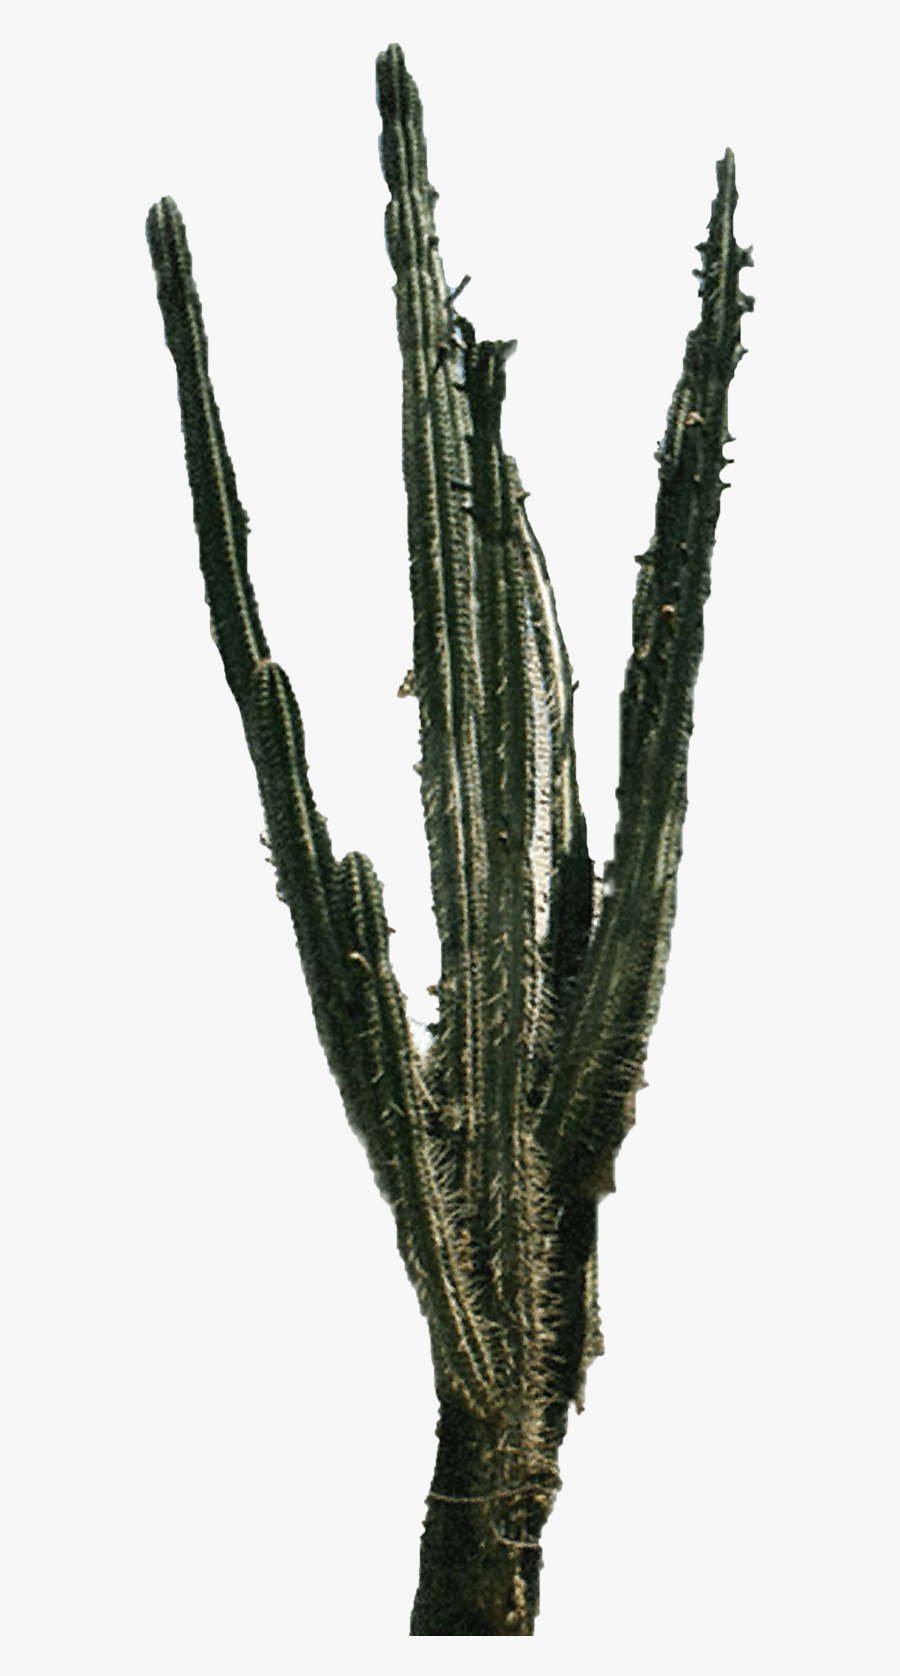 Cactus Plant Image Png, Transparent Clipart